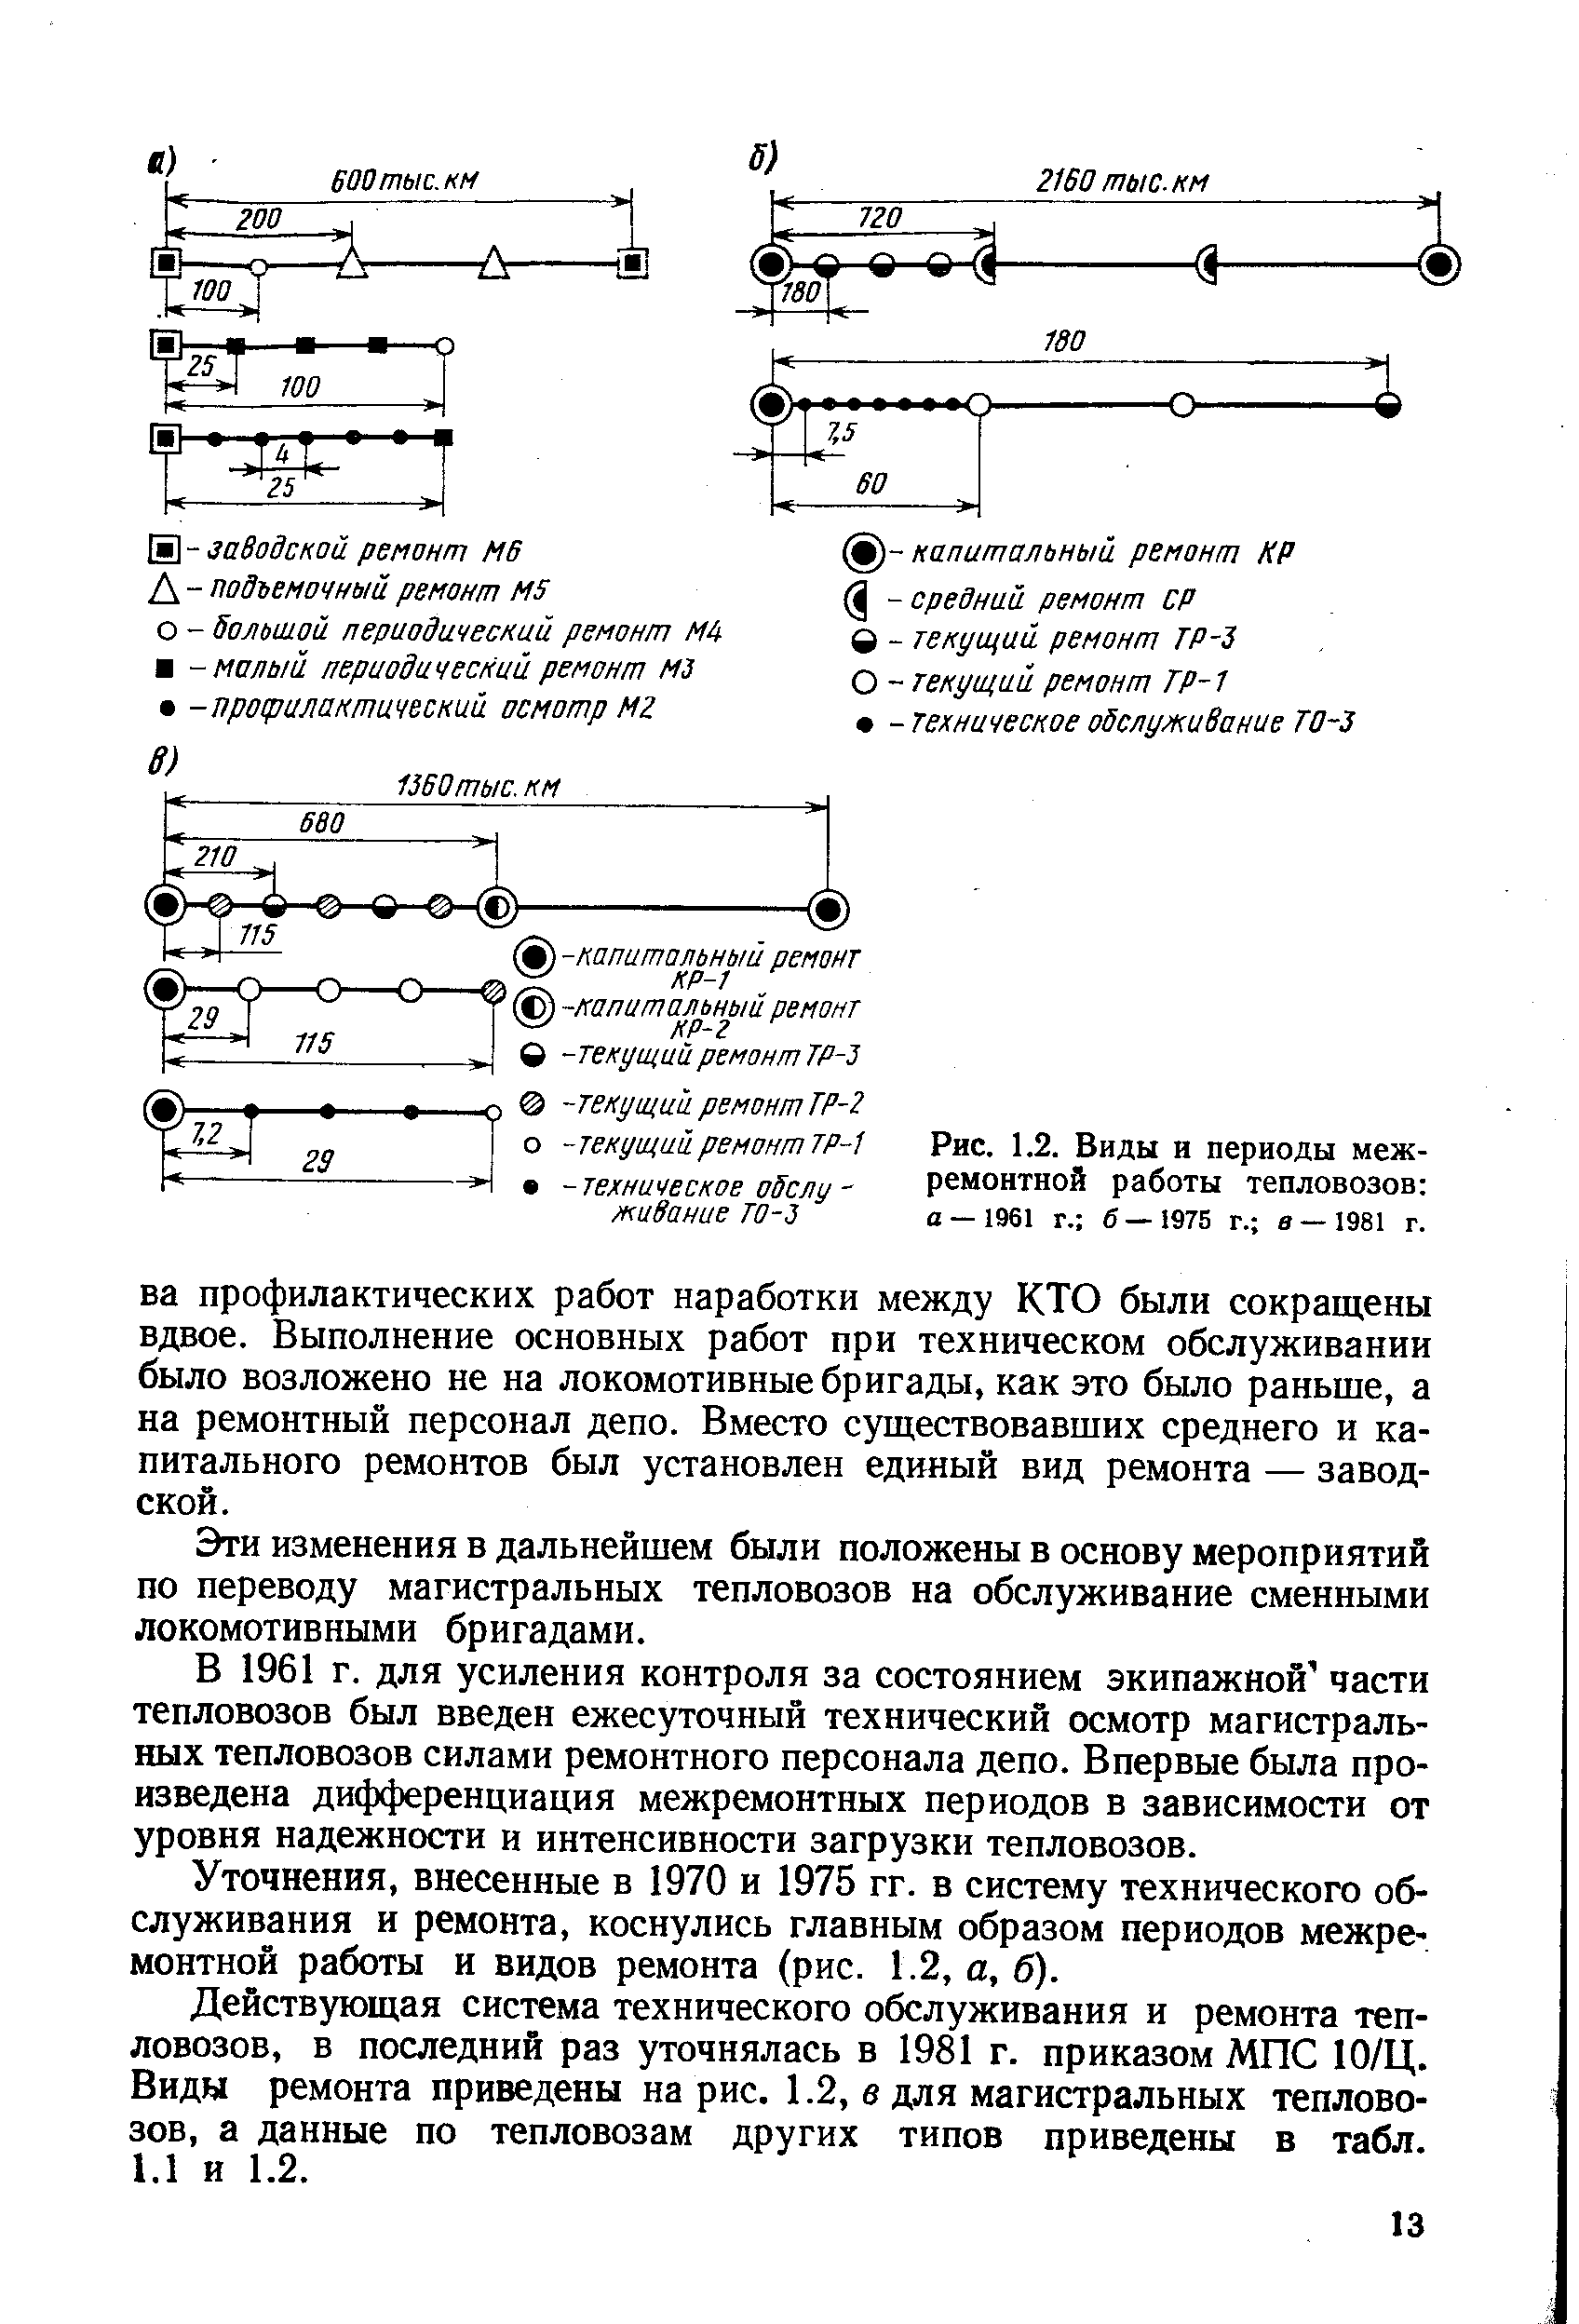 Рис. 1.2. Виды и <a href="/info/64987">периоды межремонтной</a> работы тепловозов а-1961 г. 6—1975 г. в —1981 г.
